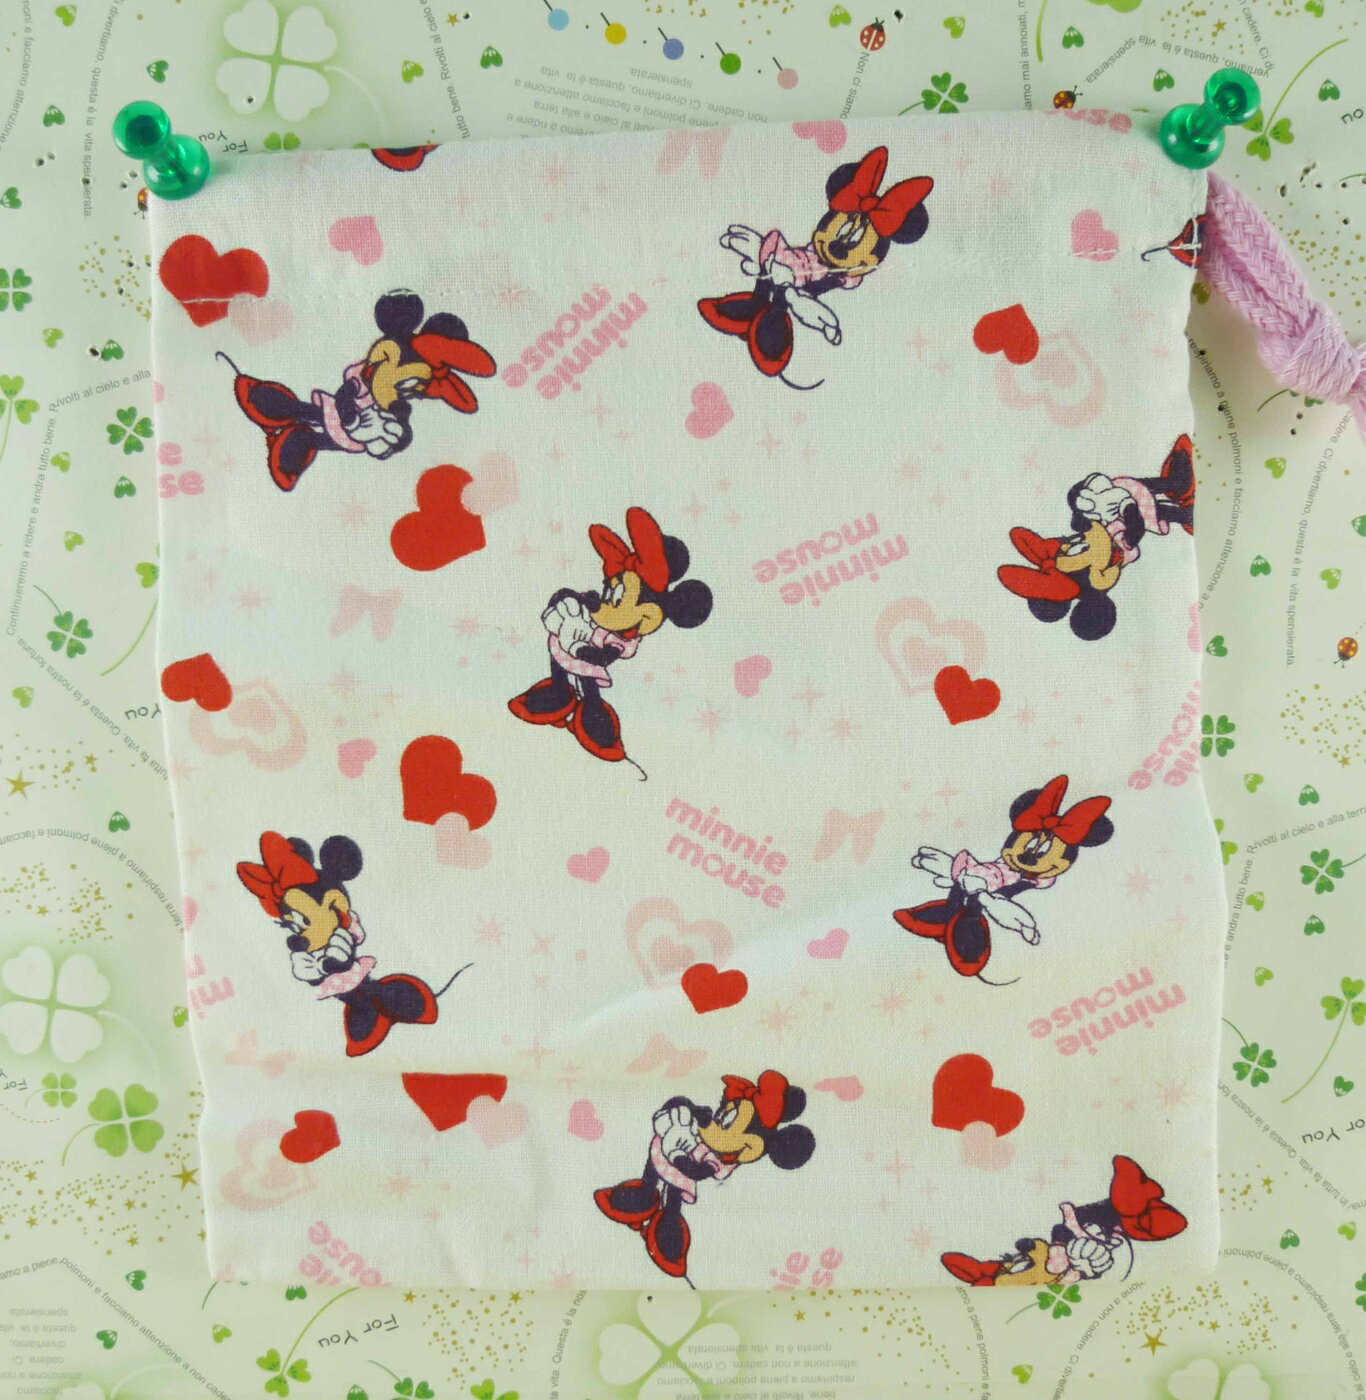 【震撼精品百貨】Micky Mouse 米奇/米妮 束口袋-粉 震撼日式精品百貨